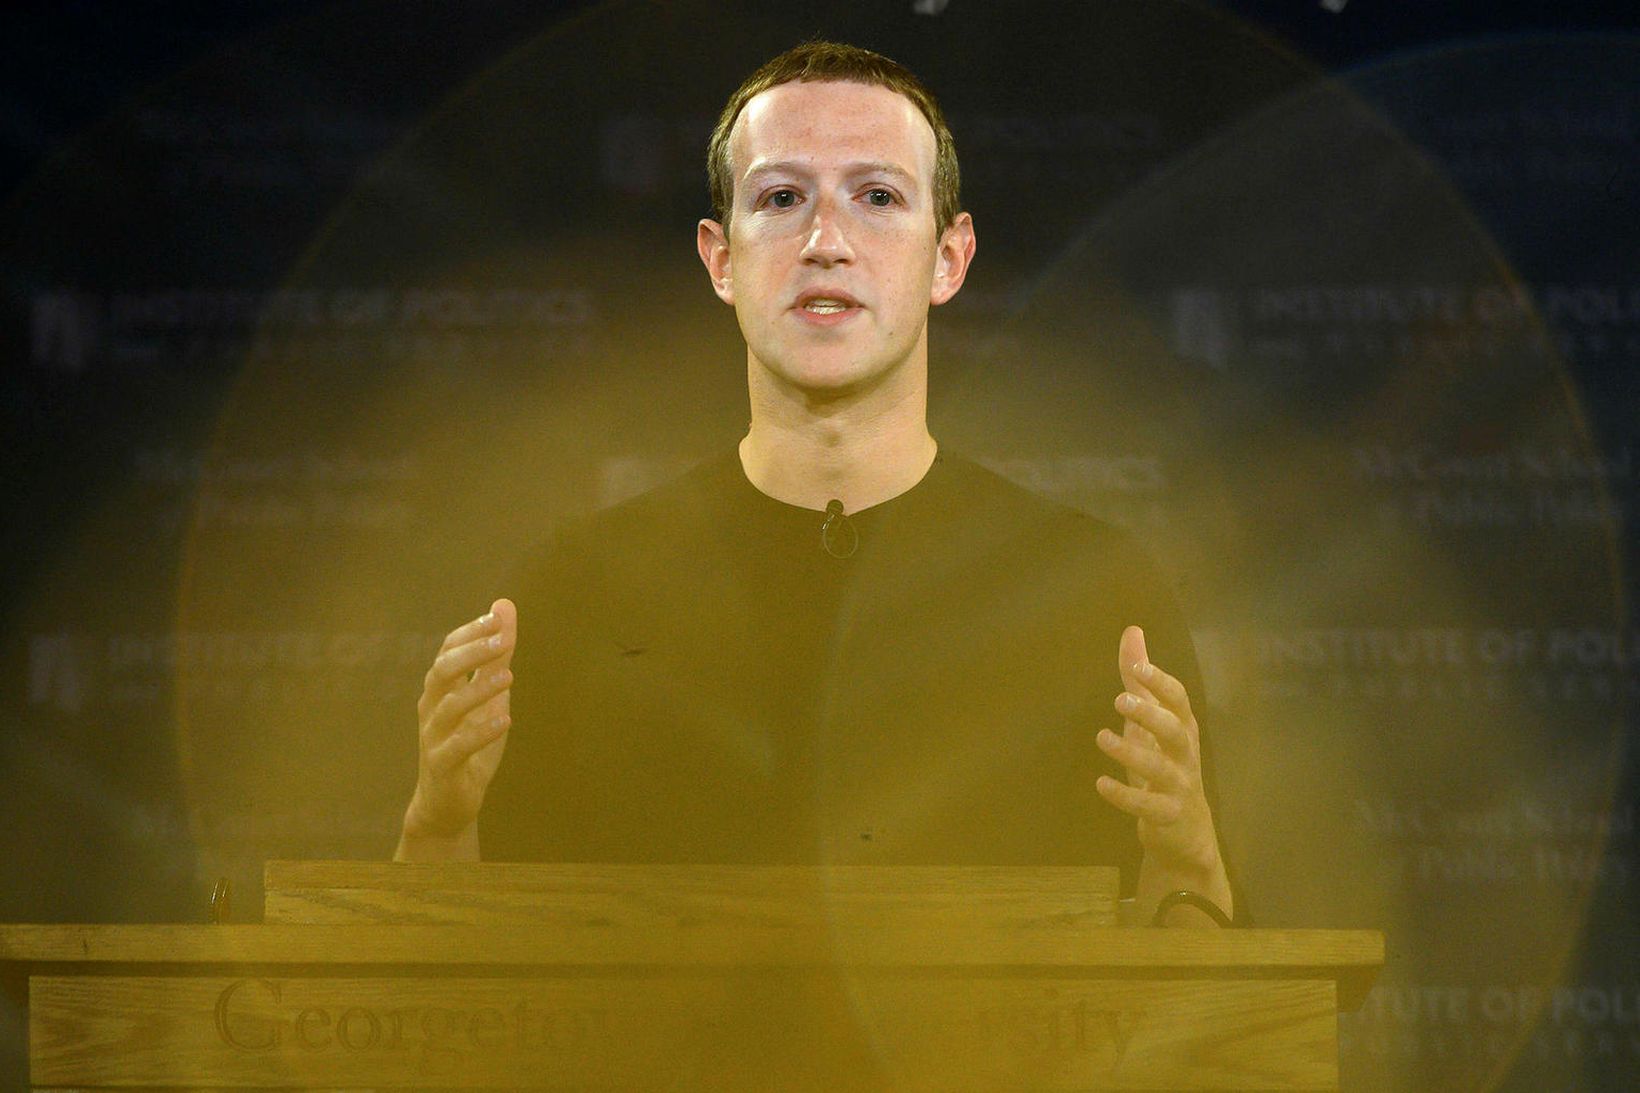 Mark Zuckerberg flytur fyrirlestur í háskóla árið 2019.